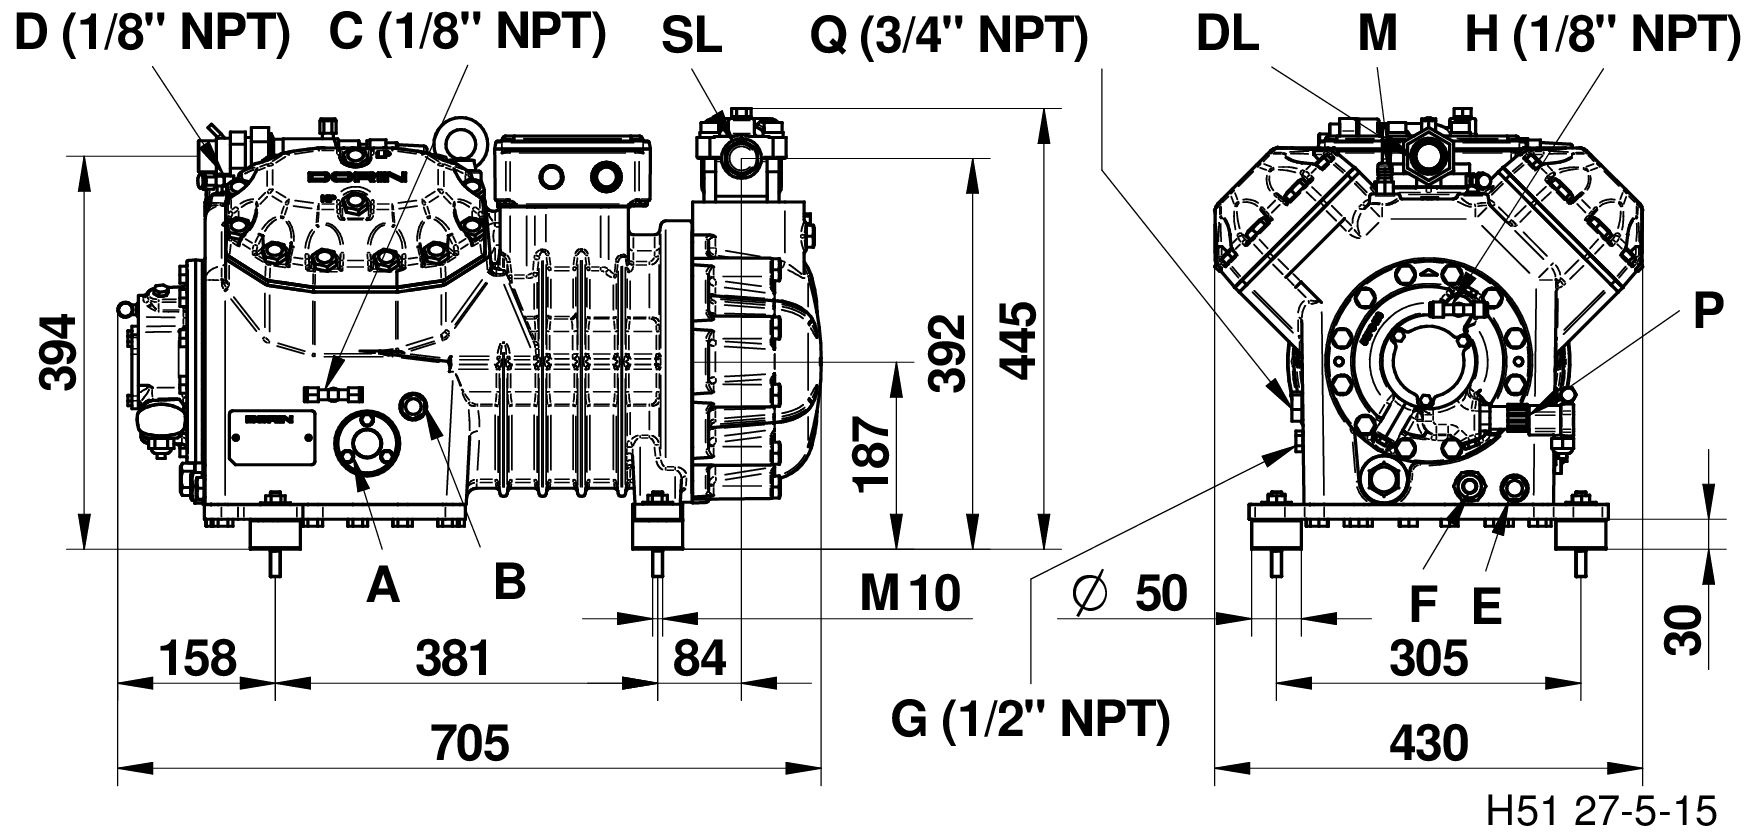 H1400EP - Compressori Semiermetici per R134a Serie HEP | DORIN